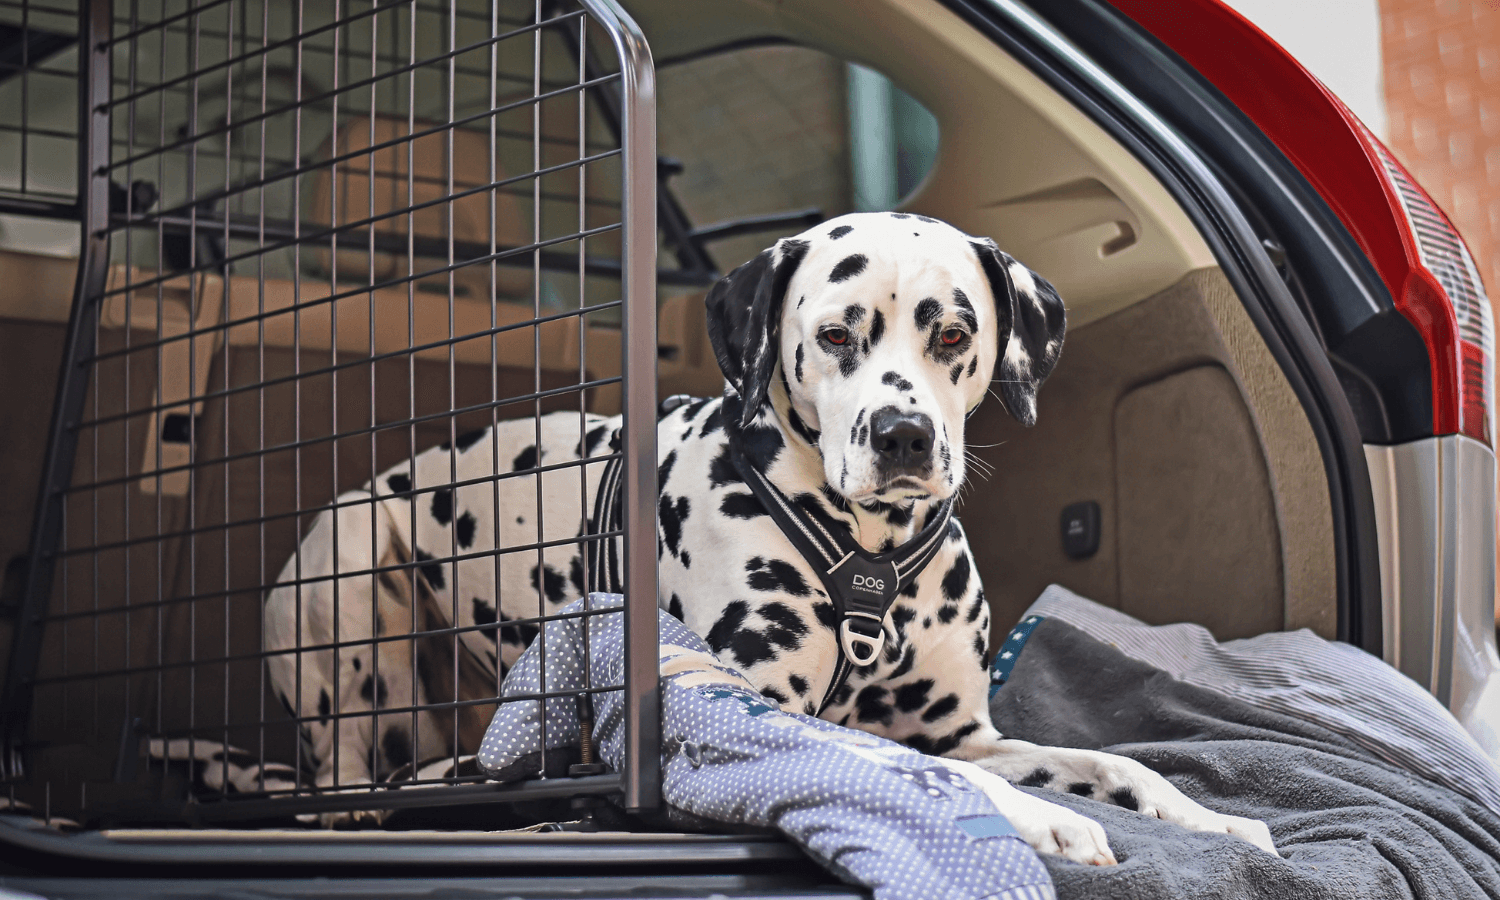 Ein Dalmatiner wird im Auto zur Routineuntersuchung beim Tierarzt transportiert. Hundegitter und Kofferraumteiler von Travall sichern den Hund im Kofferraum. © Travall.de